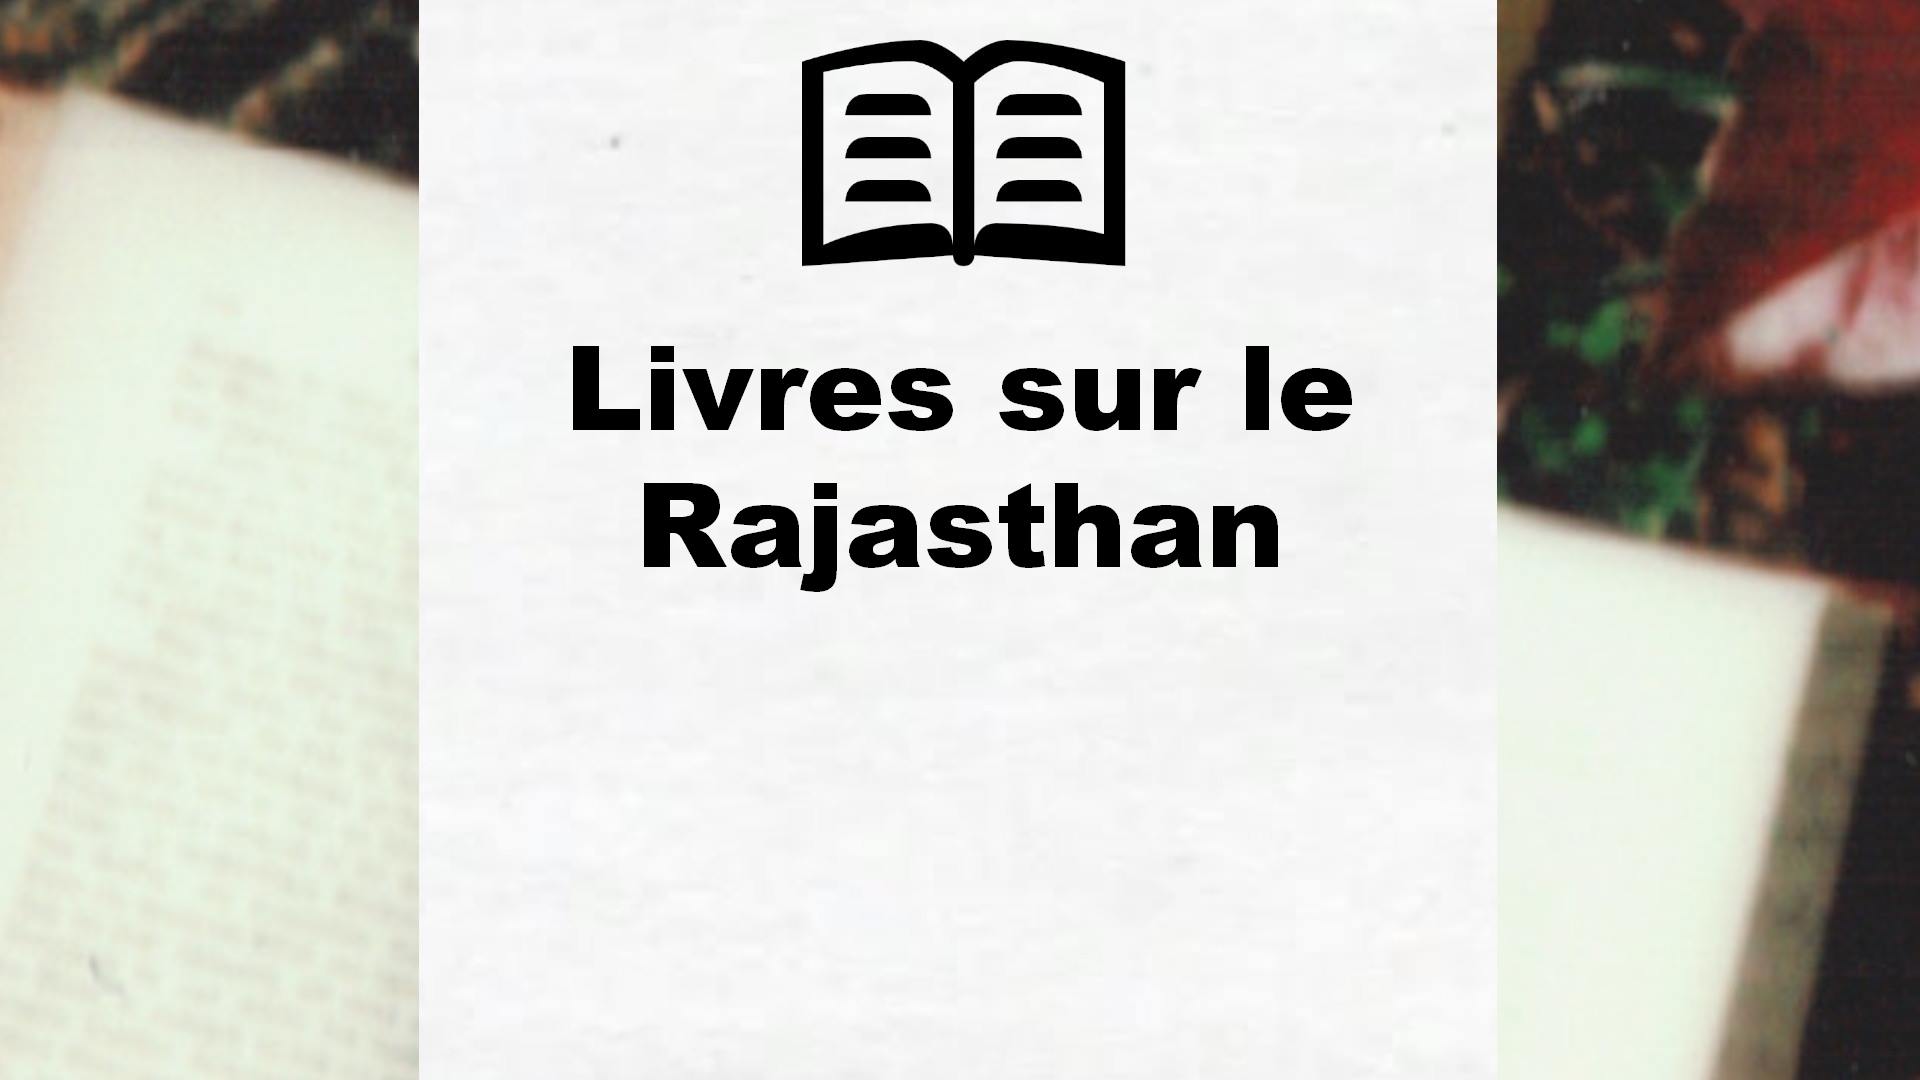 Livres sur le Rajasthan